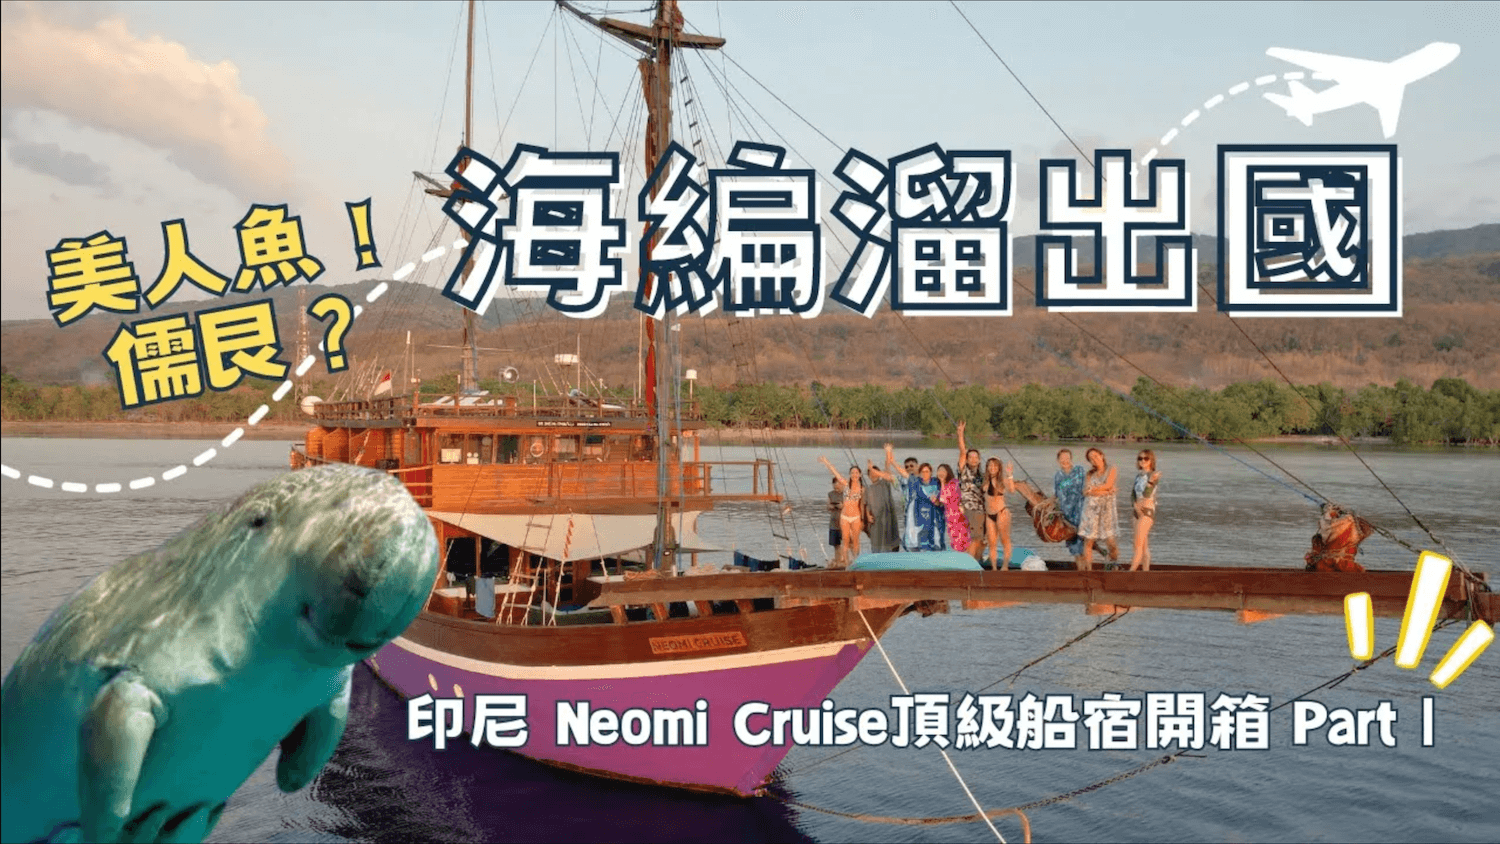 印尼船宿 neomi cruise 海編溜出國